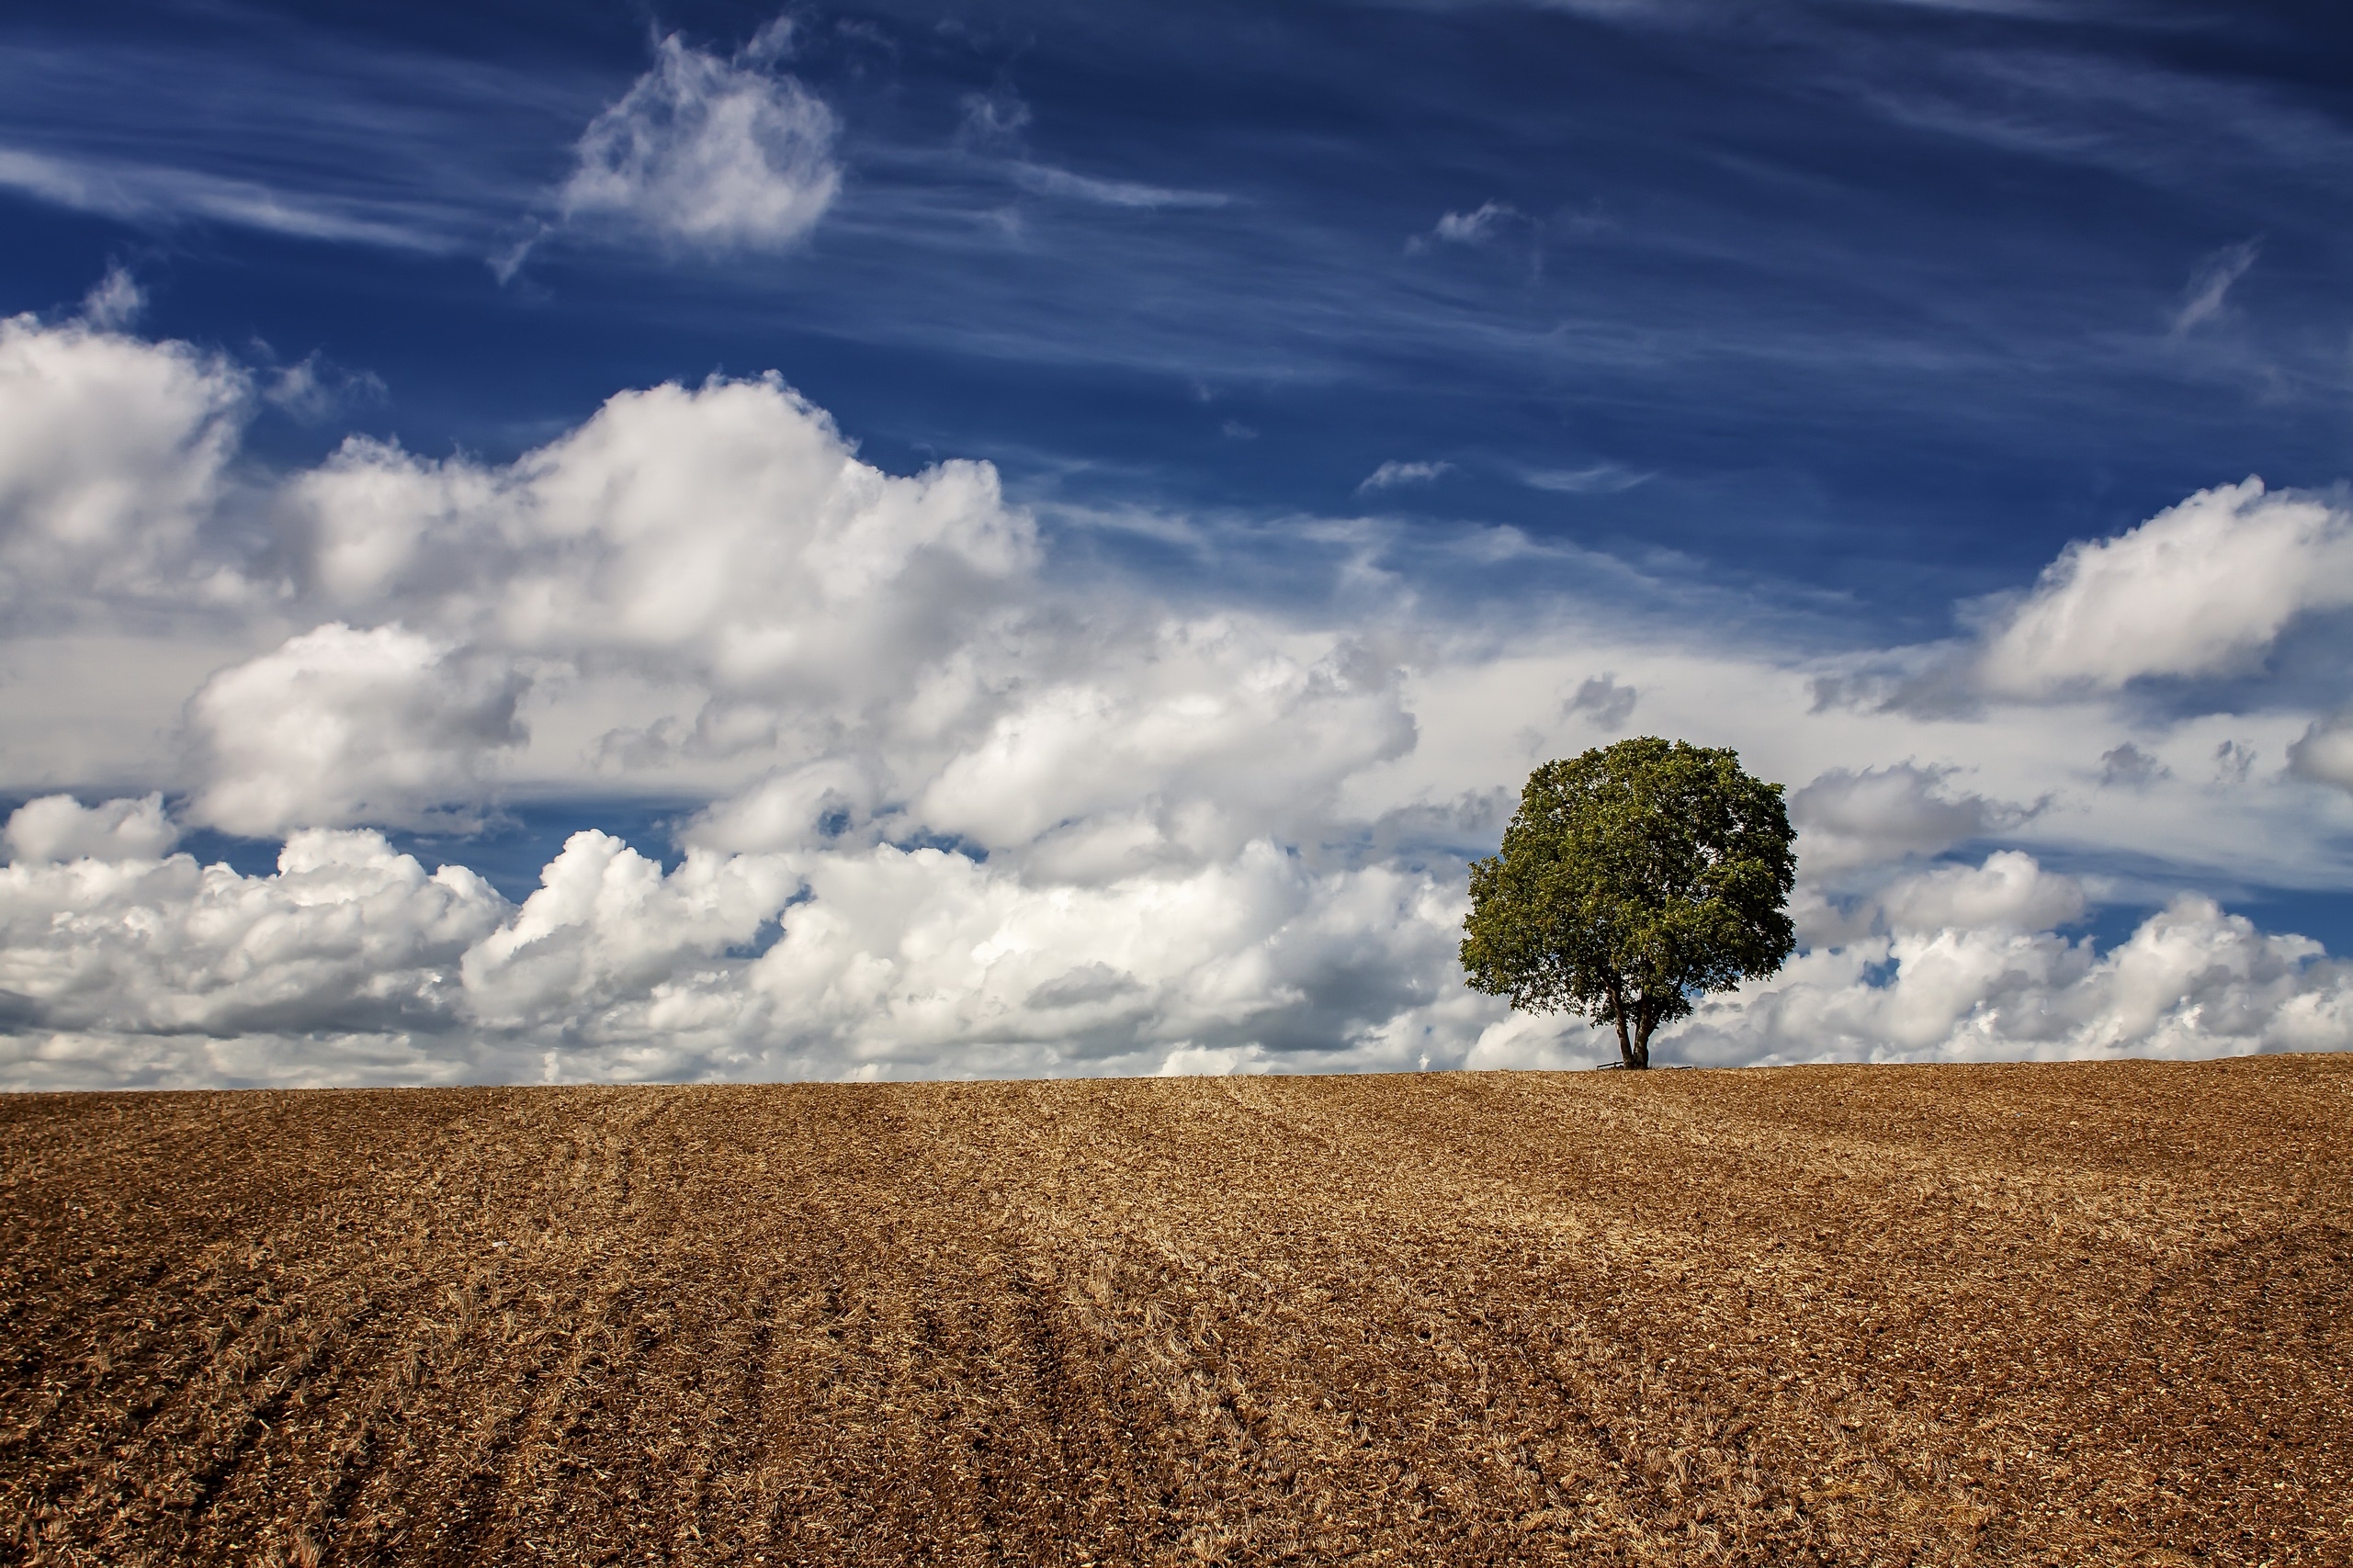 免费照片田野里的一棵孤树和天空中的羽毛状云朵